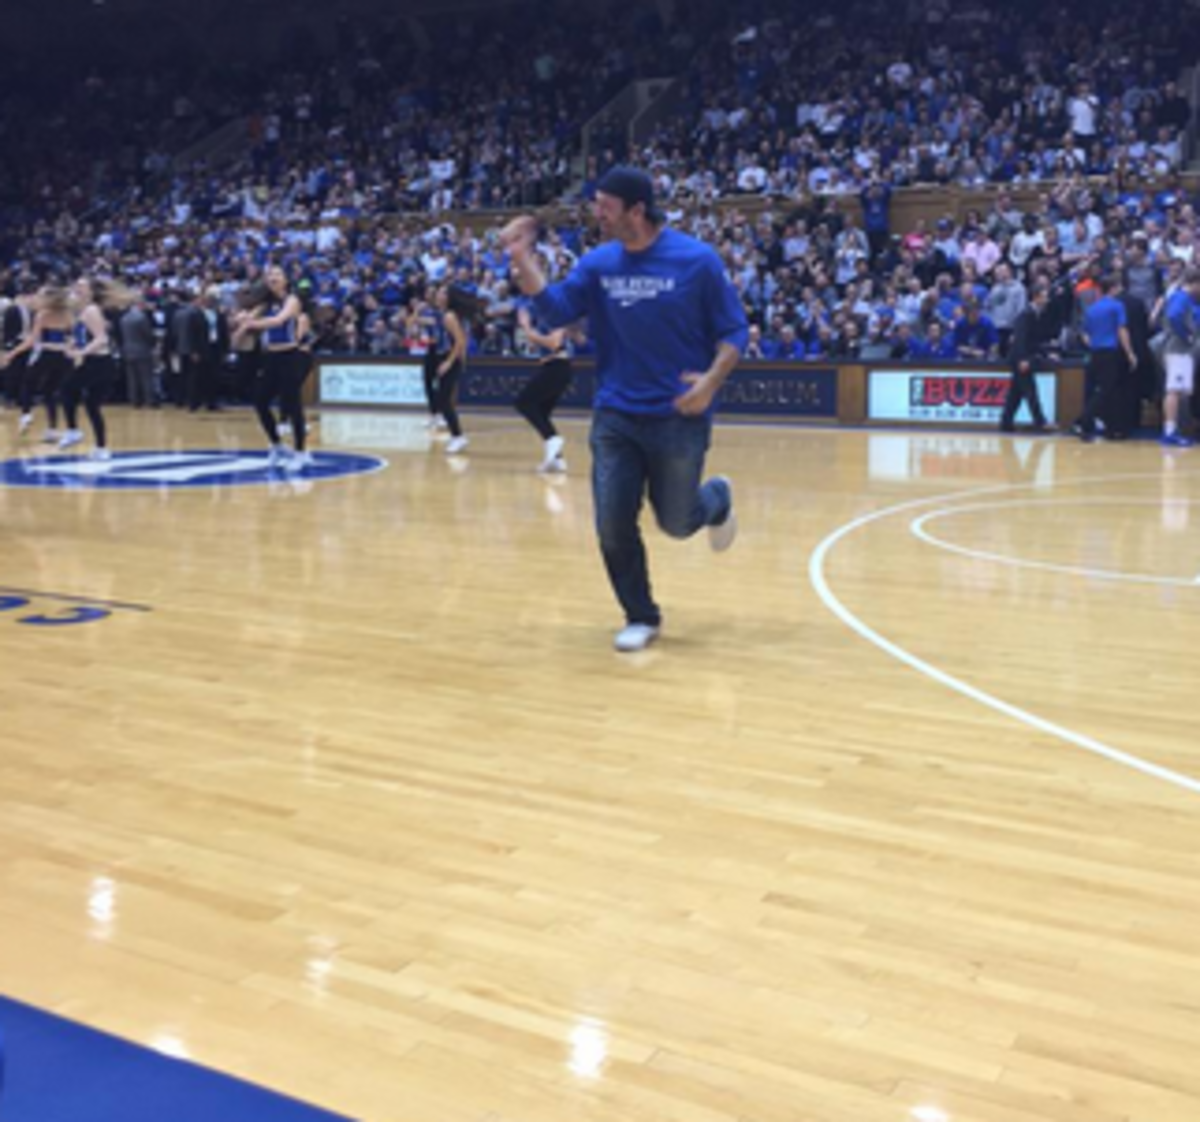 Tony Romo runs across the basketball court.